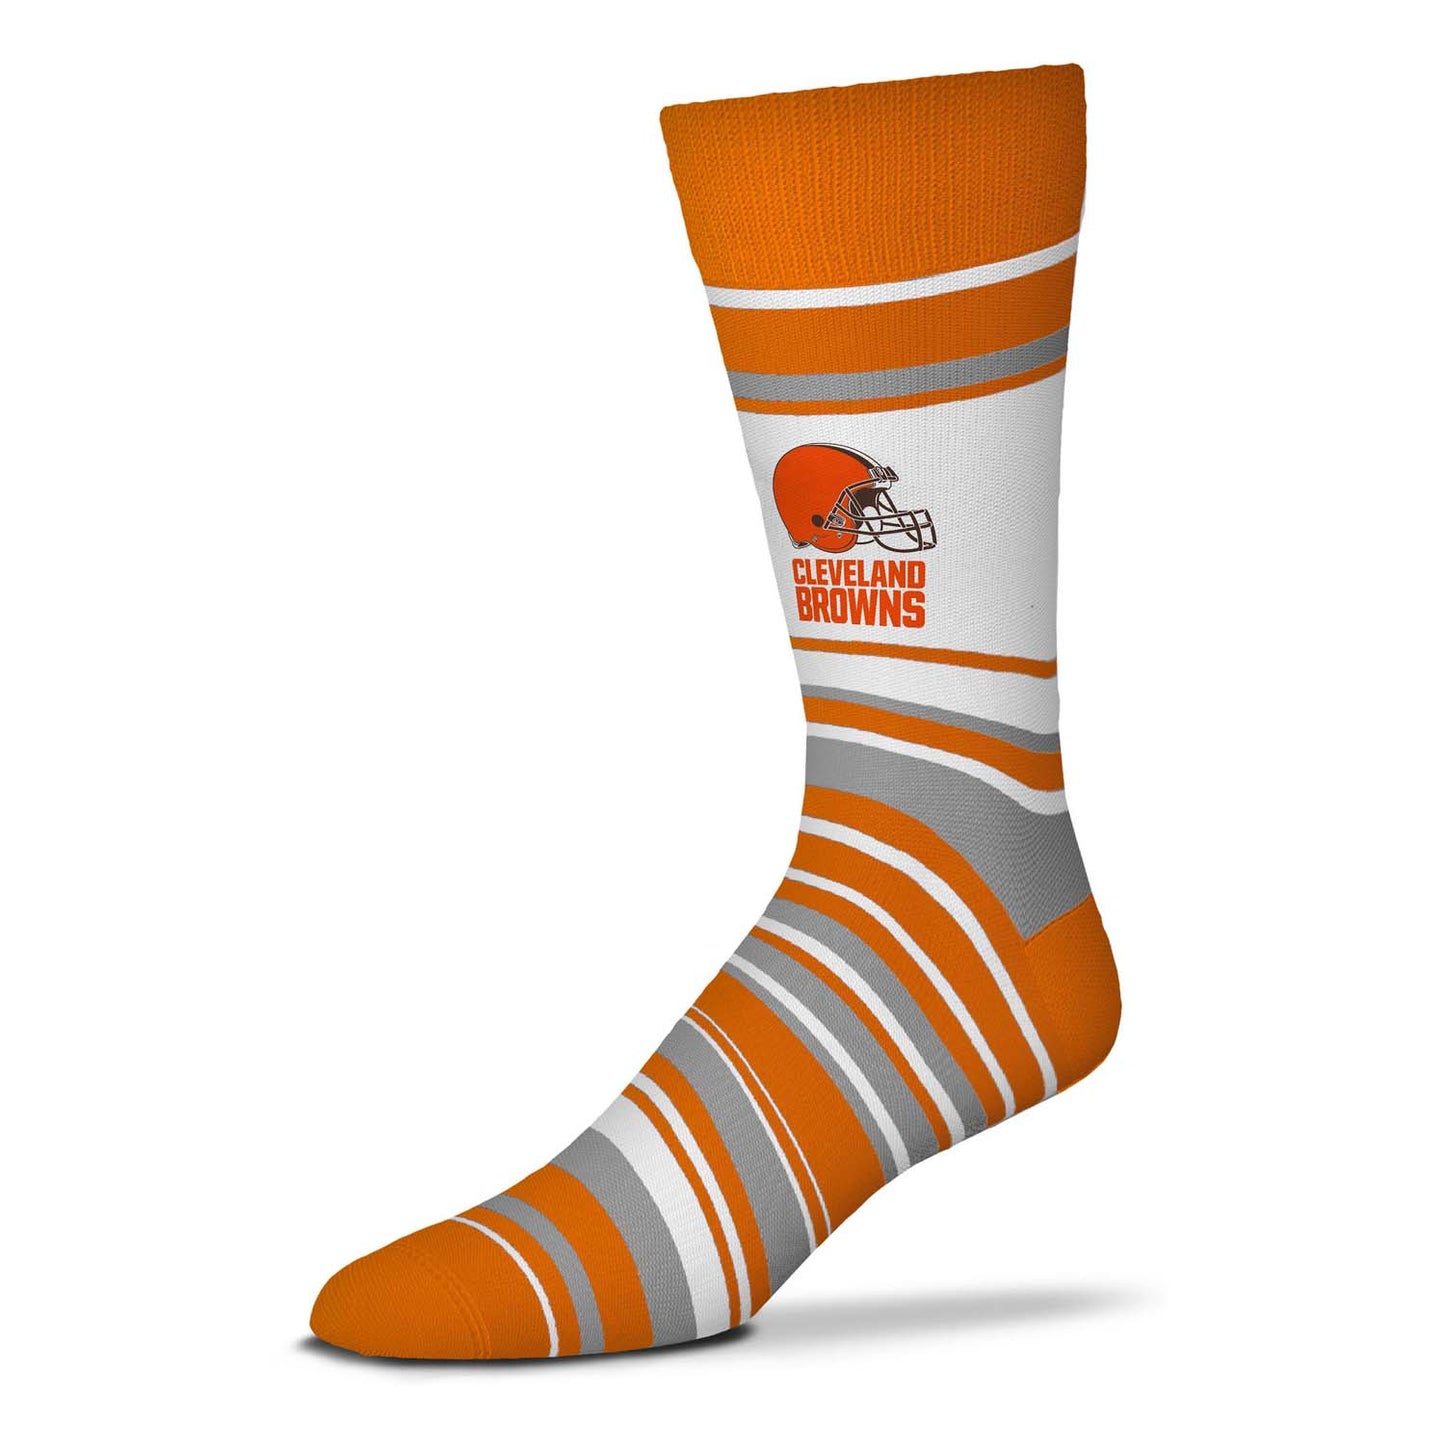 Cleveland Browns NFL Adult Striped Dress Socks - Orange